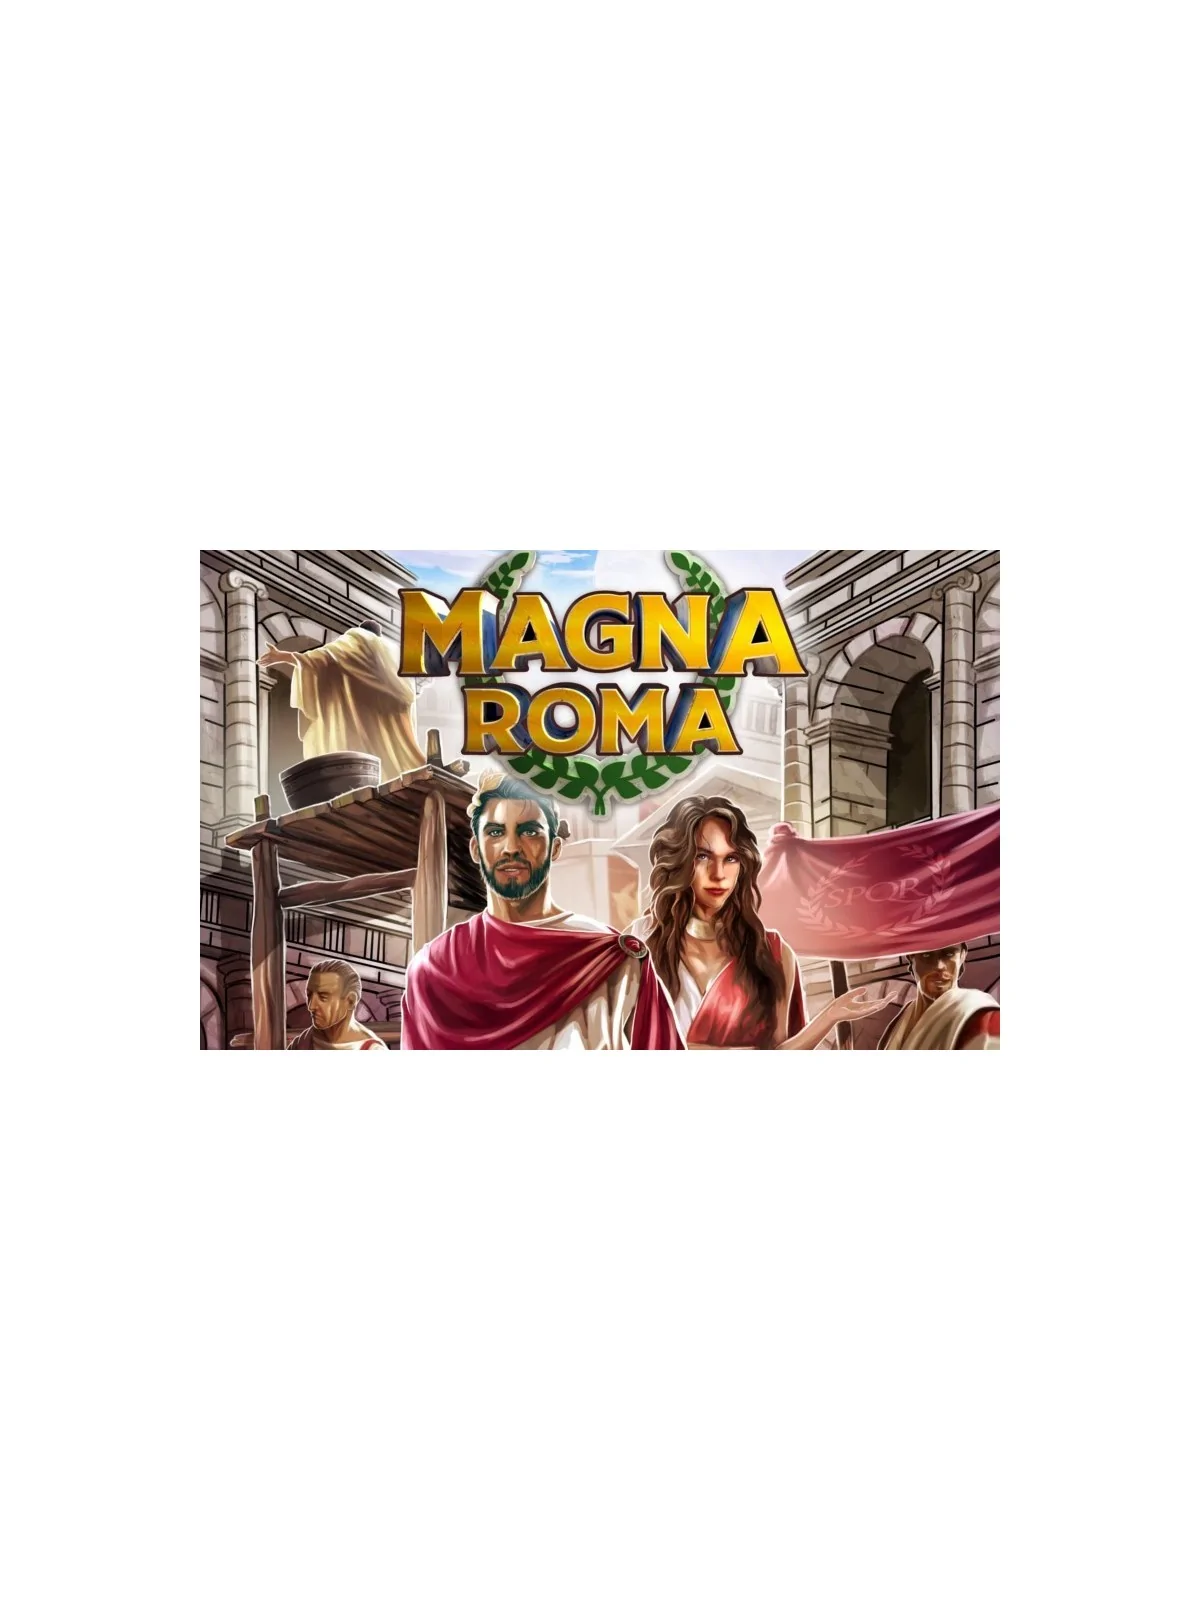 Comprar Magna Roma barato al mejor precio 54,89 € de Bumble3ee